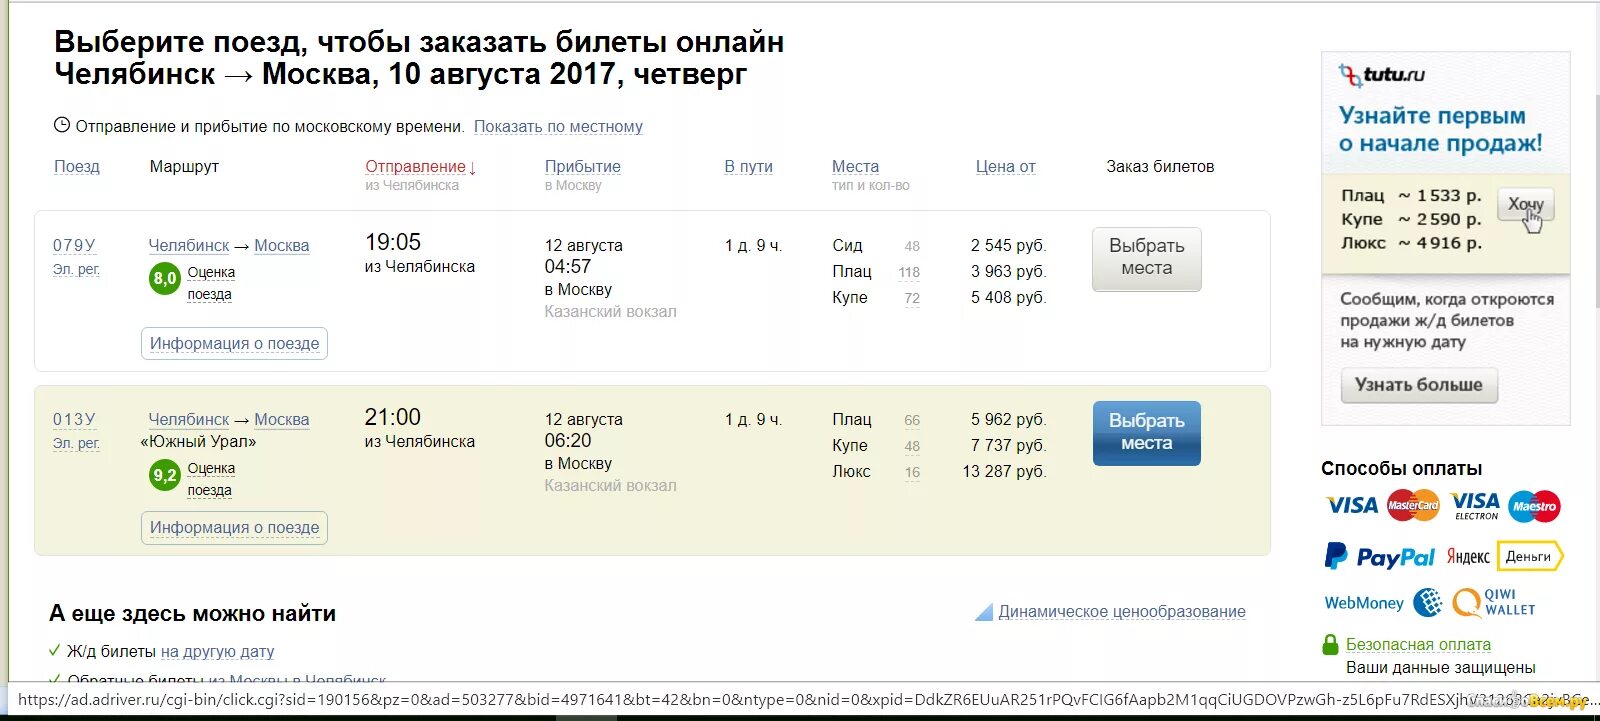 Сайт заказов билетов на поезд. Билет на поезд. Билет на поезд Челябинск Москва. Билет до Челябинска. Туту.